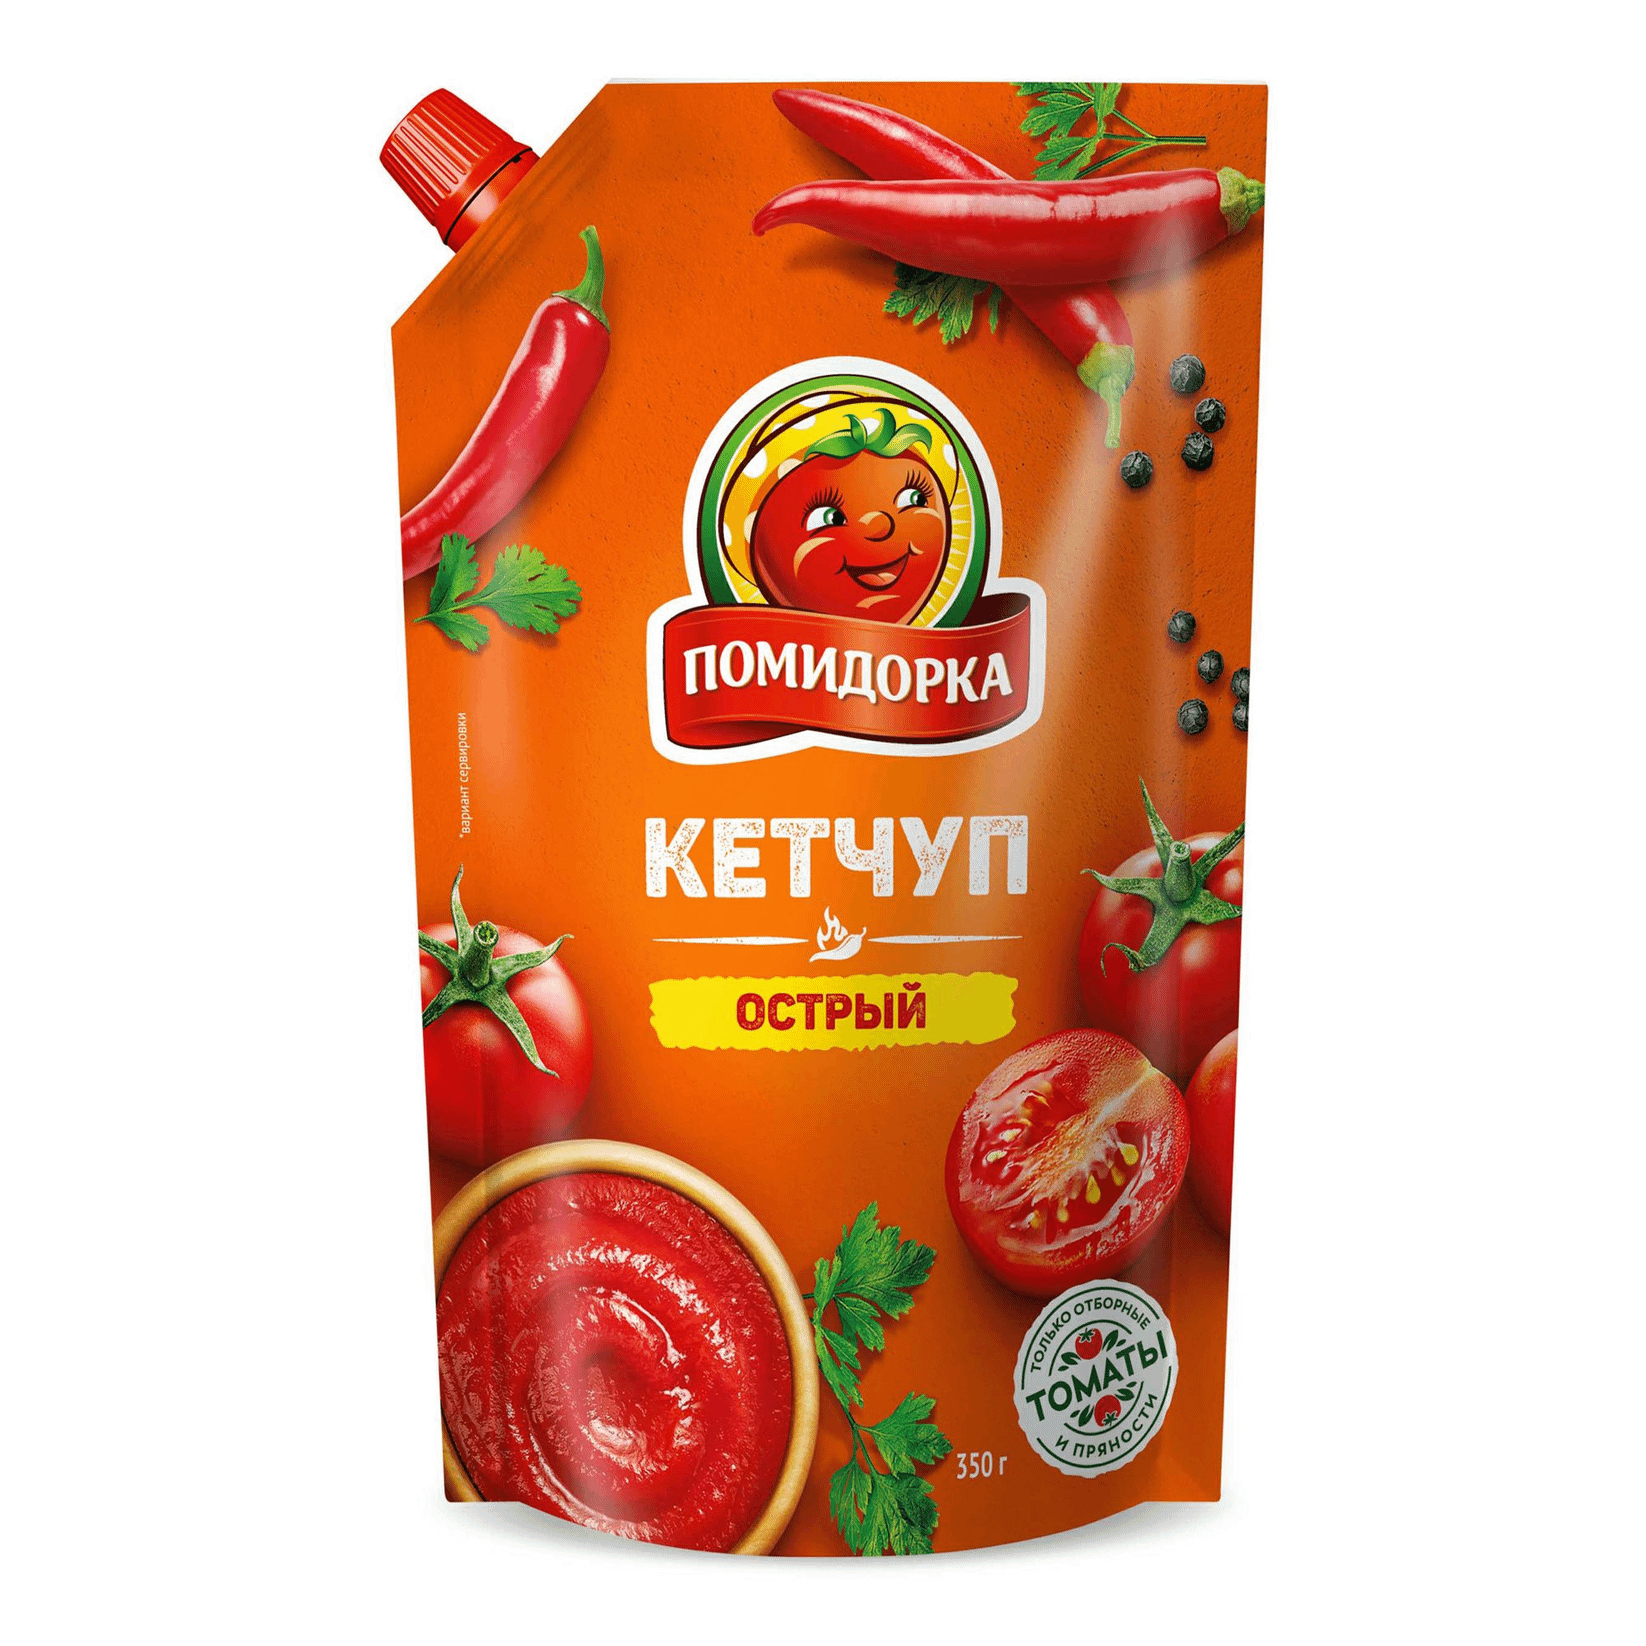 Кетчуп Помидорка Острый 350 г кетчуп томатный помидорка 350 г